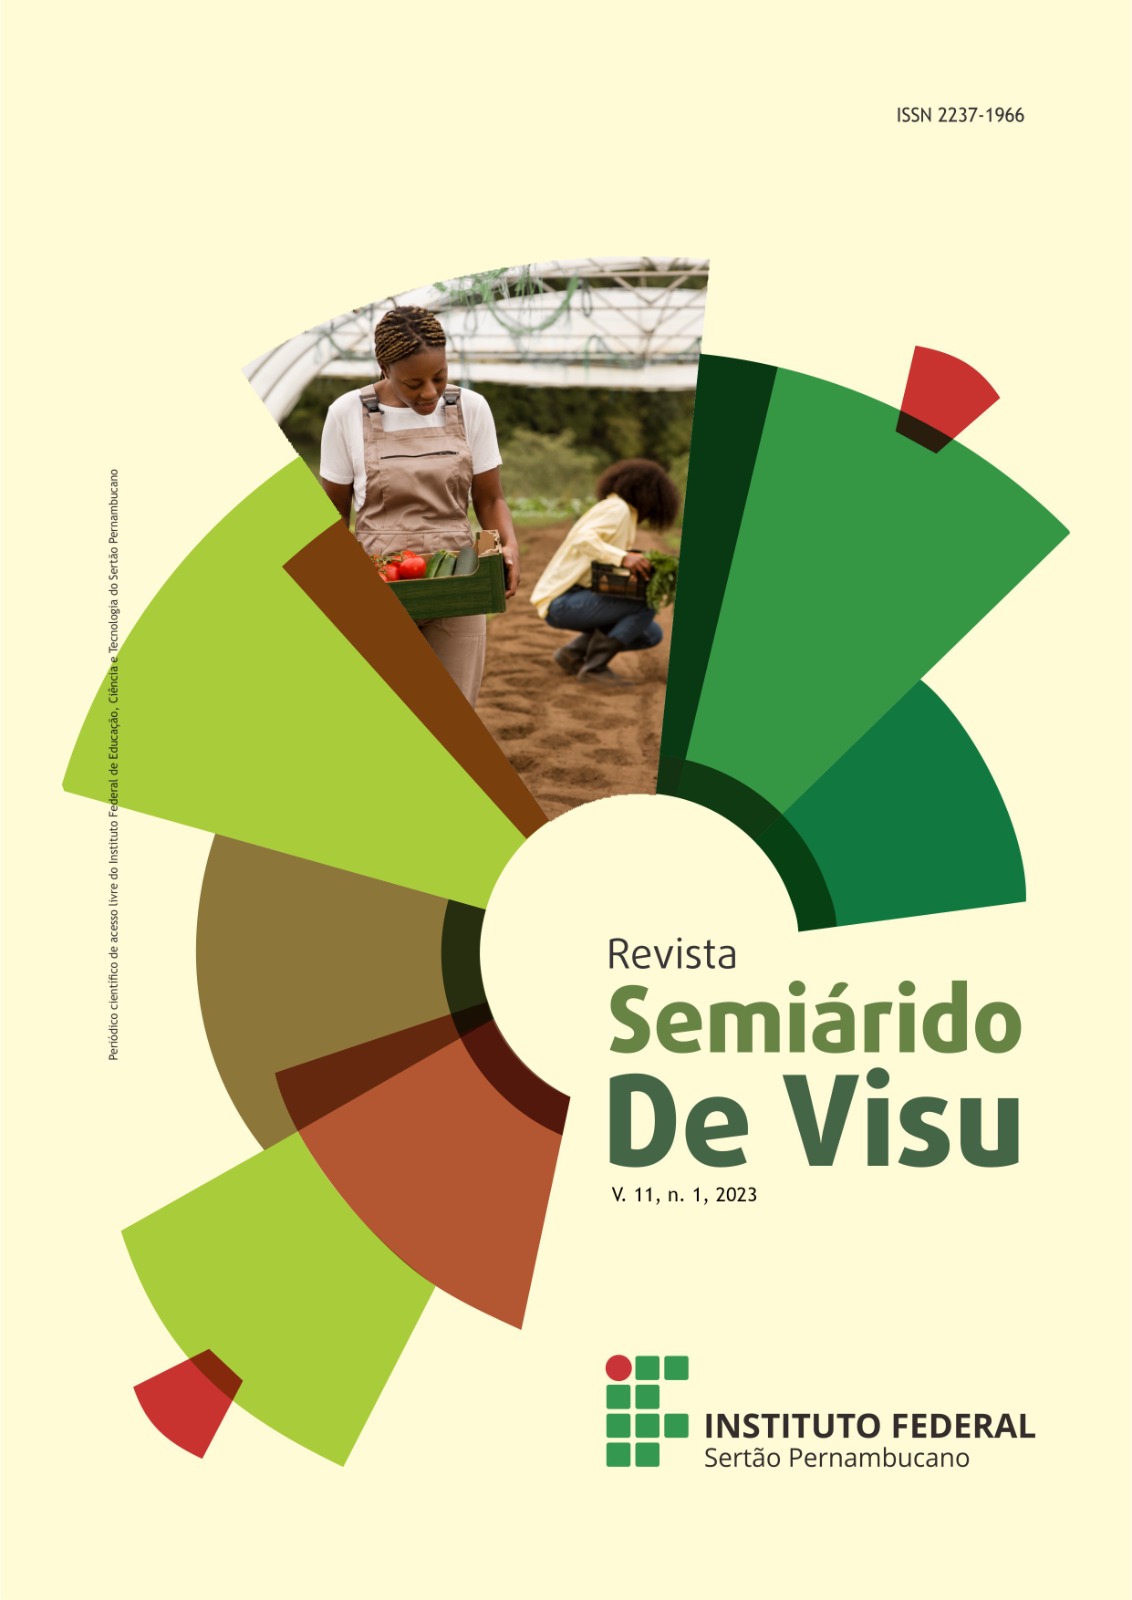 					Visualizar v. 11 n. 1 (2023): Revista Semiárido De Visu - v. 11, n. 1, 2023
				